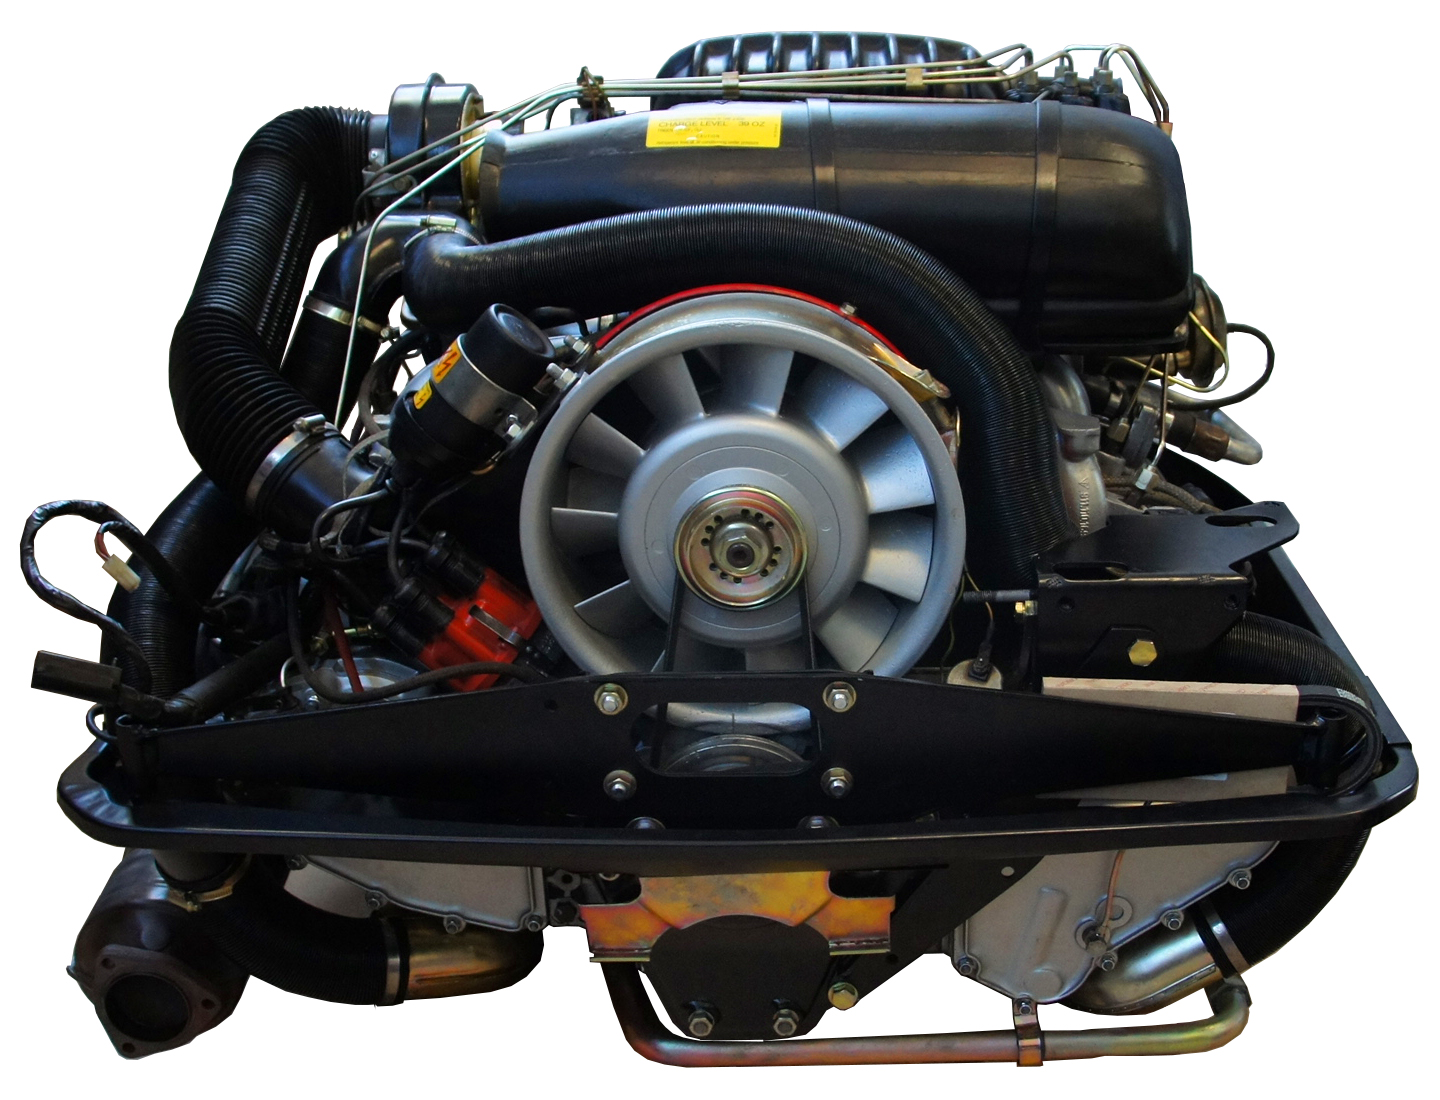 Porsche flat-6 boxer engine